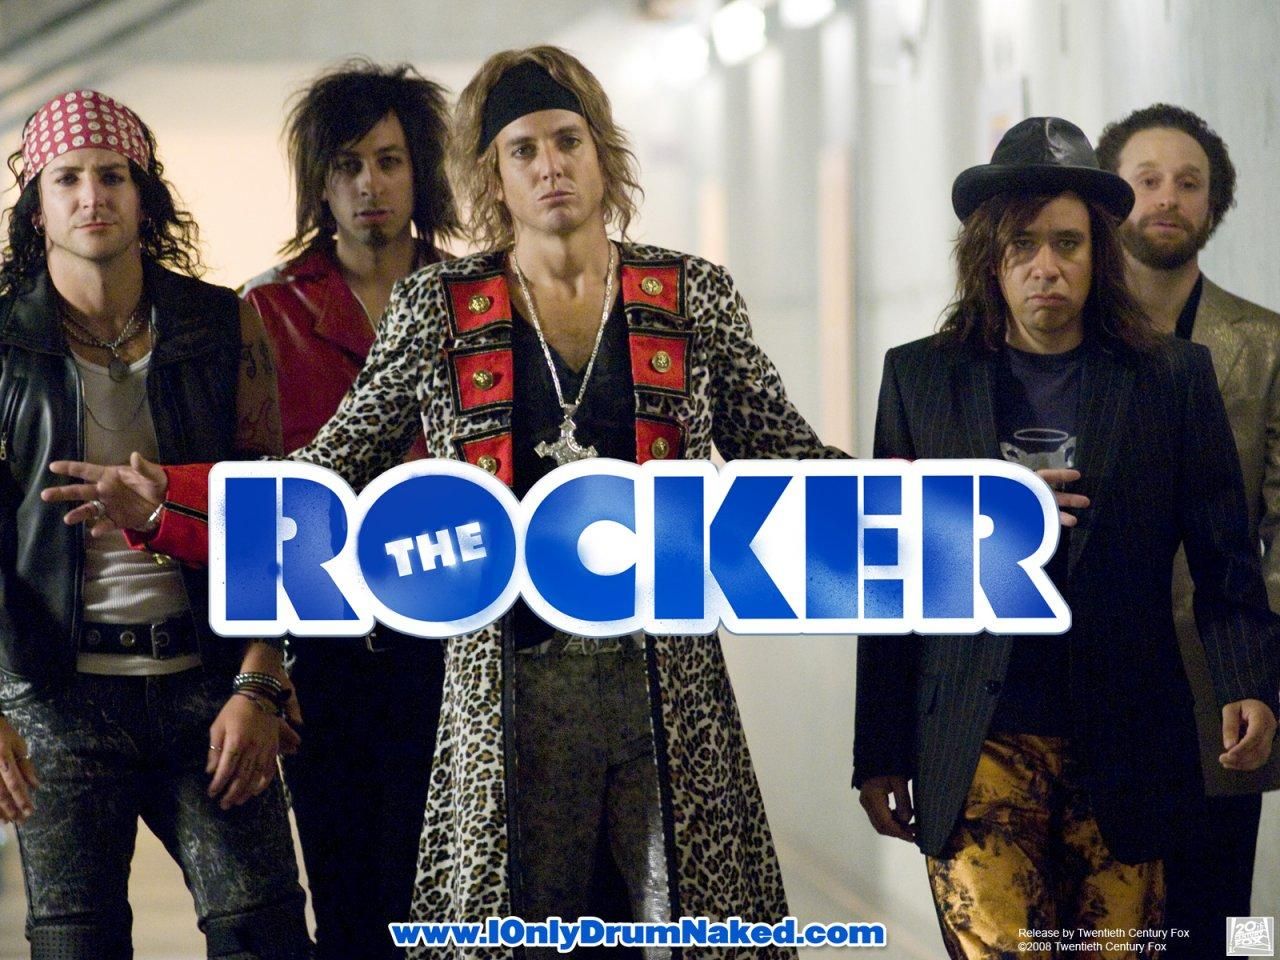 Фильм Голый барабанщик | The Rocker - лучшие обои для рабочего стола